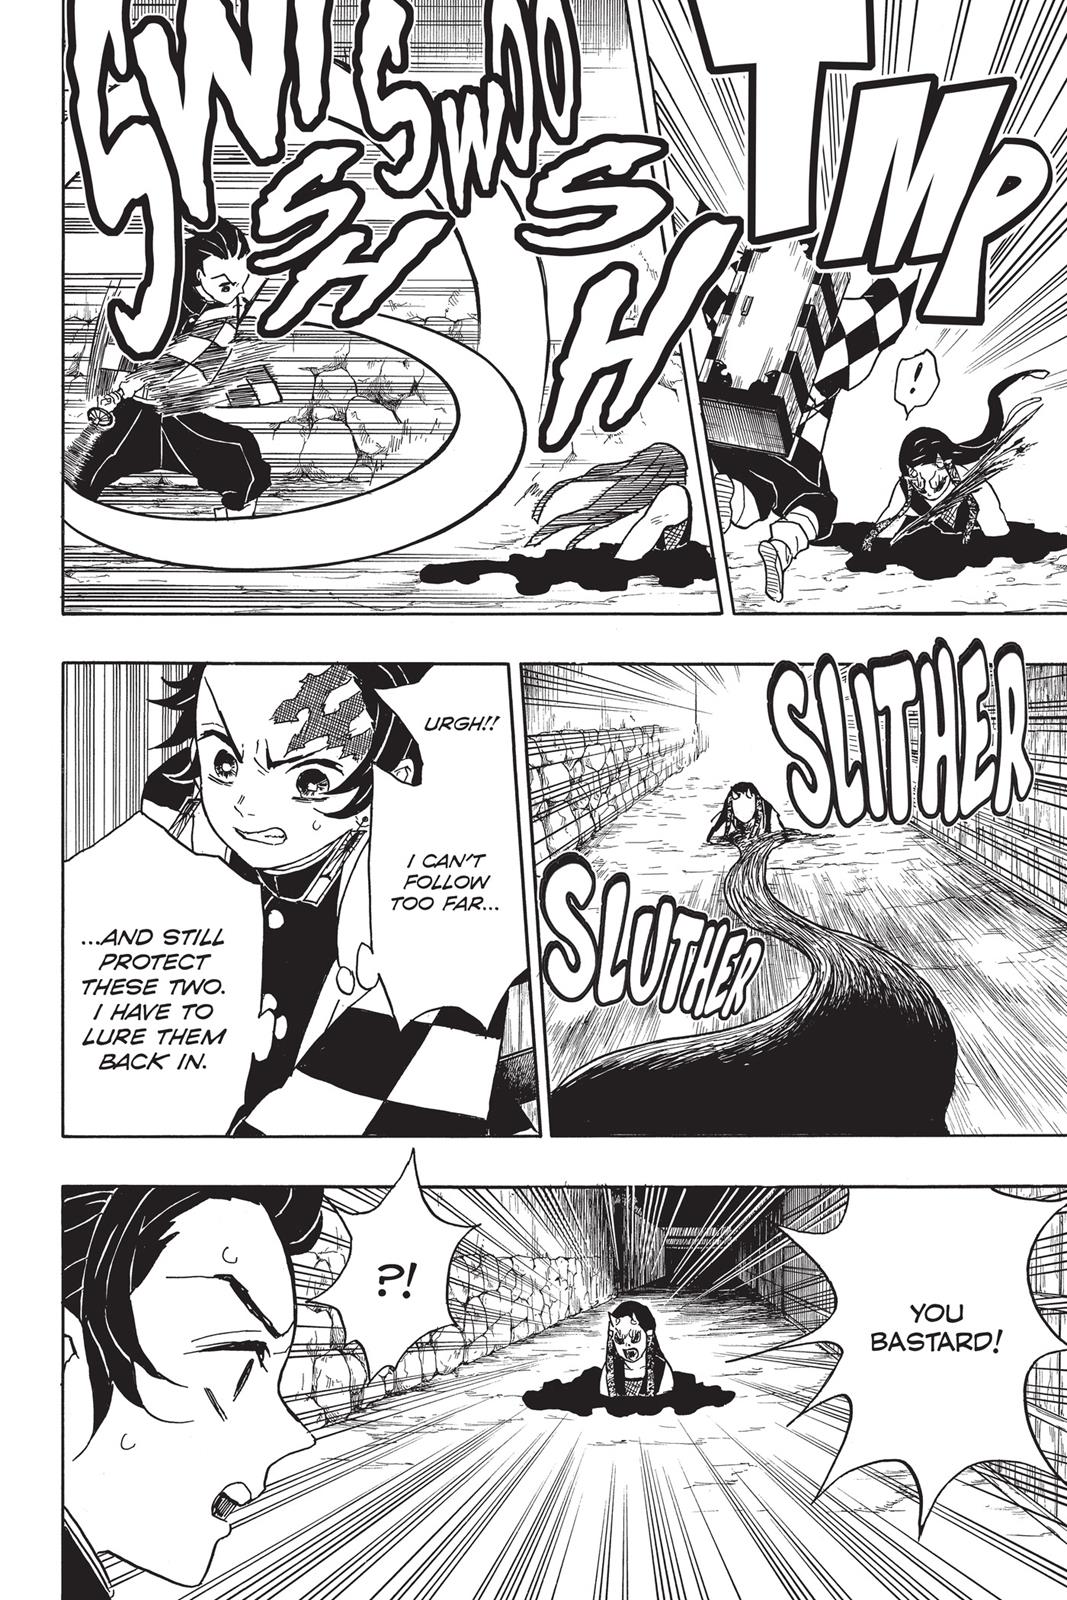 Demon Slayer Manga Manga Chapter - 11 - image 5